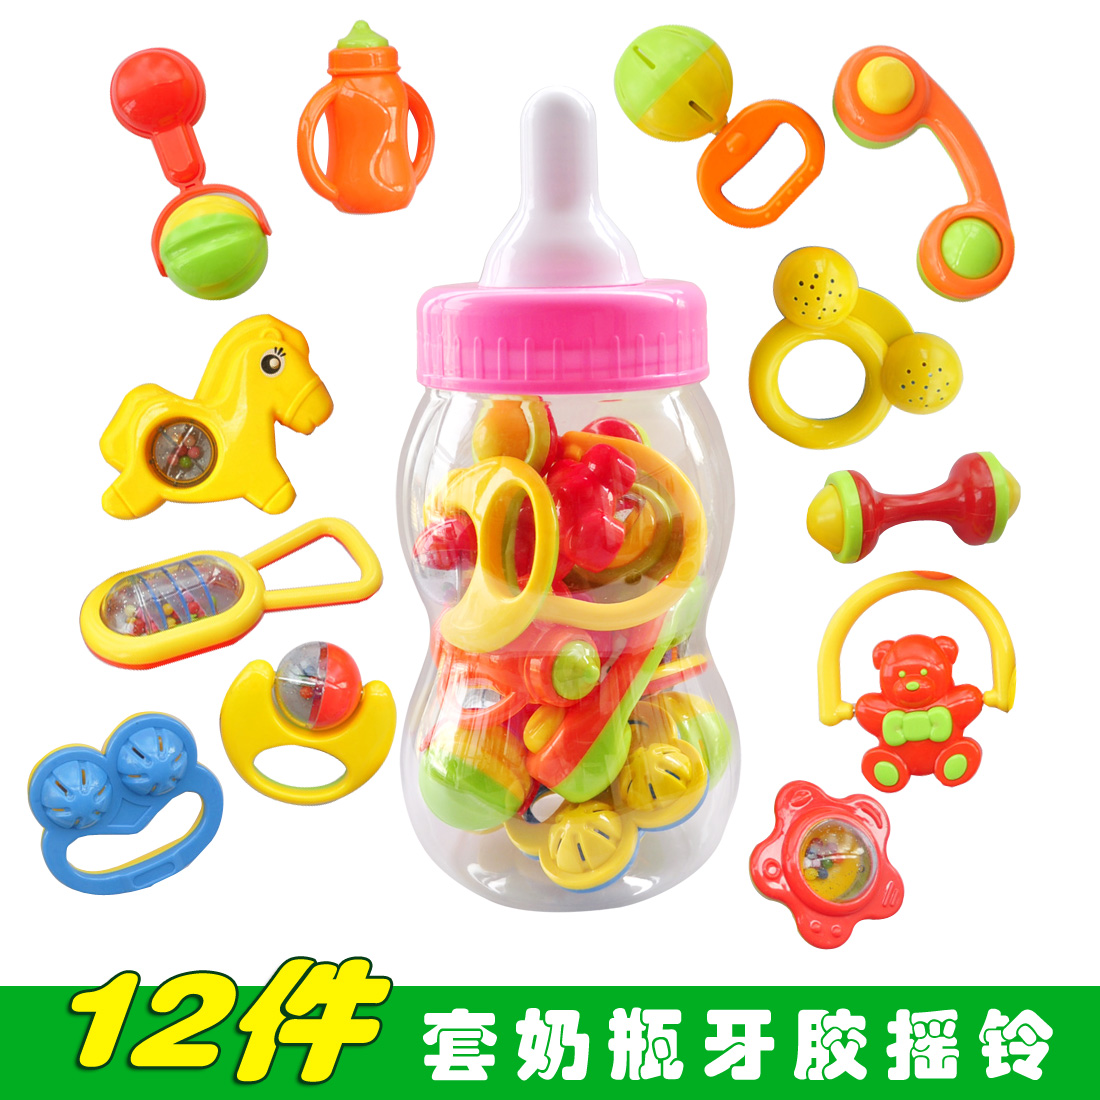 大奶瓶摇铃组合12件套装 手摇铃婴儿摇铃婴儿玩具新生儿玩具0-1岁